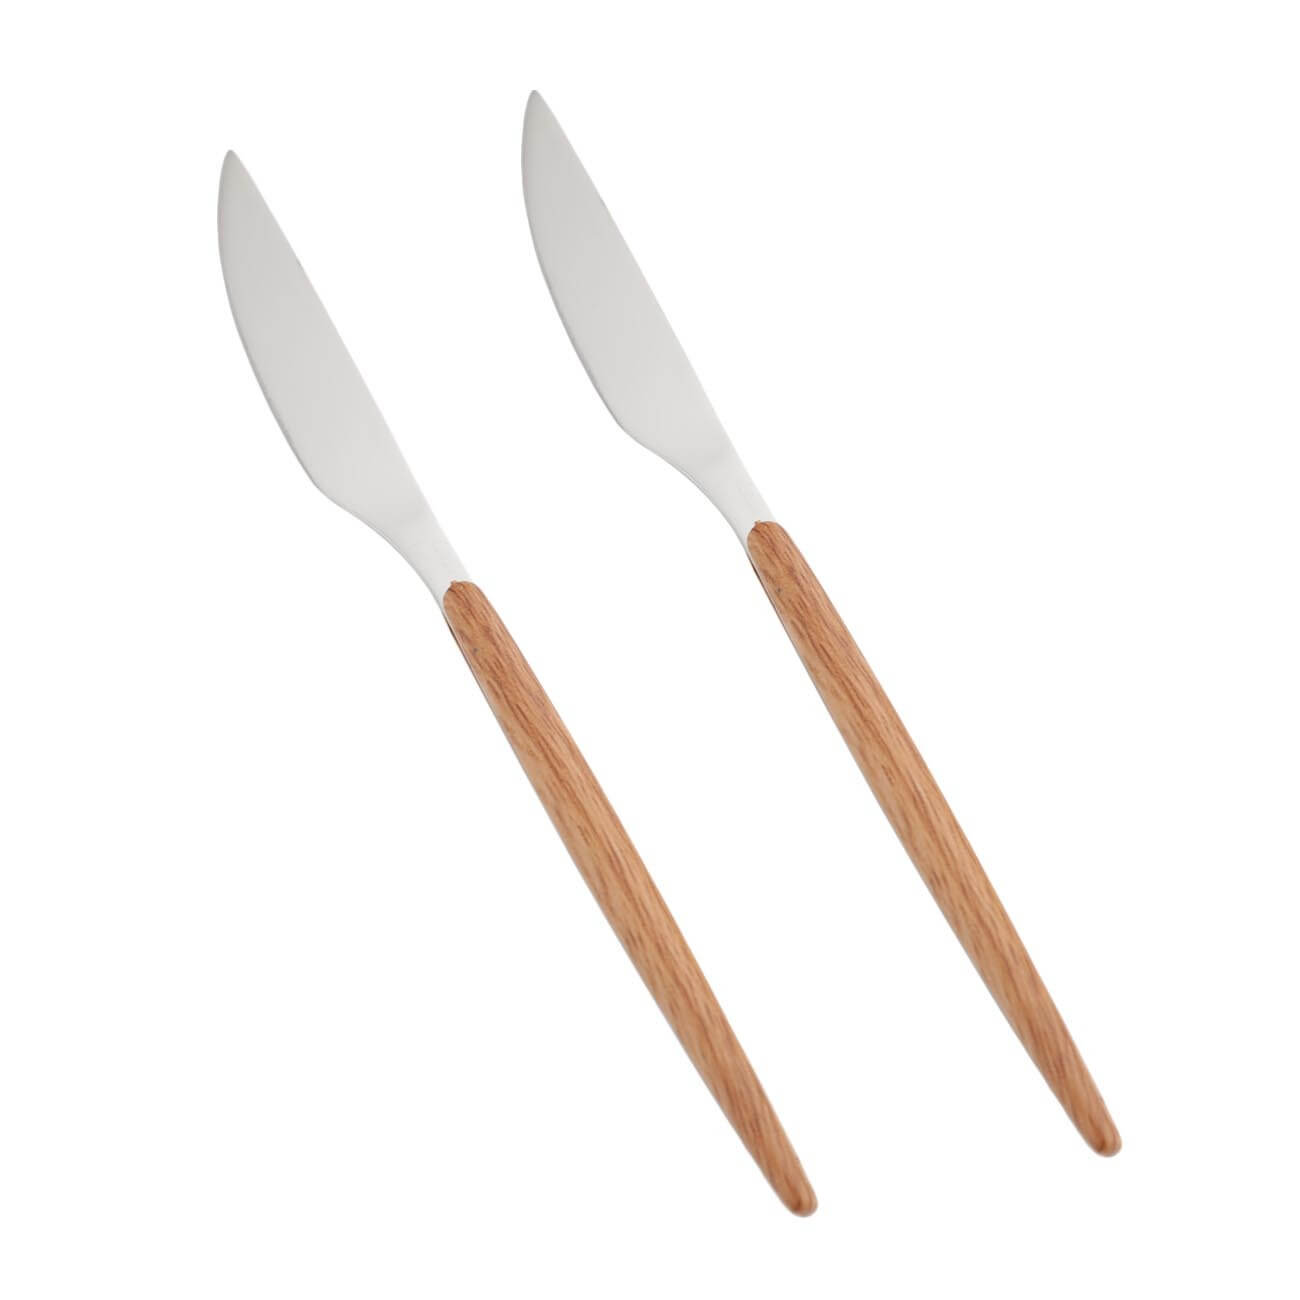 Нож столовый, 2 шт, сталь/пластик, коричневый, Oslo